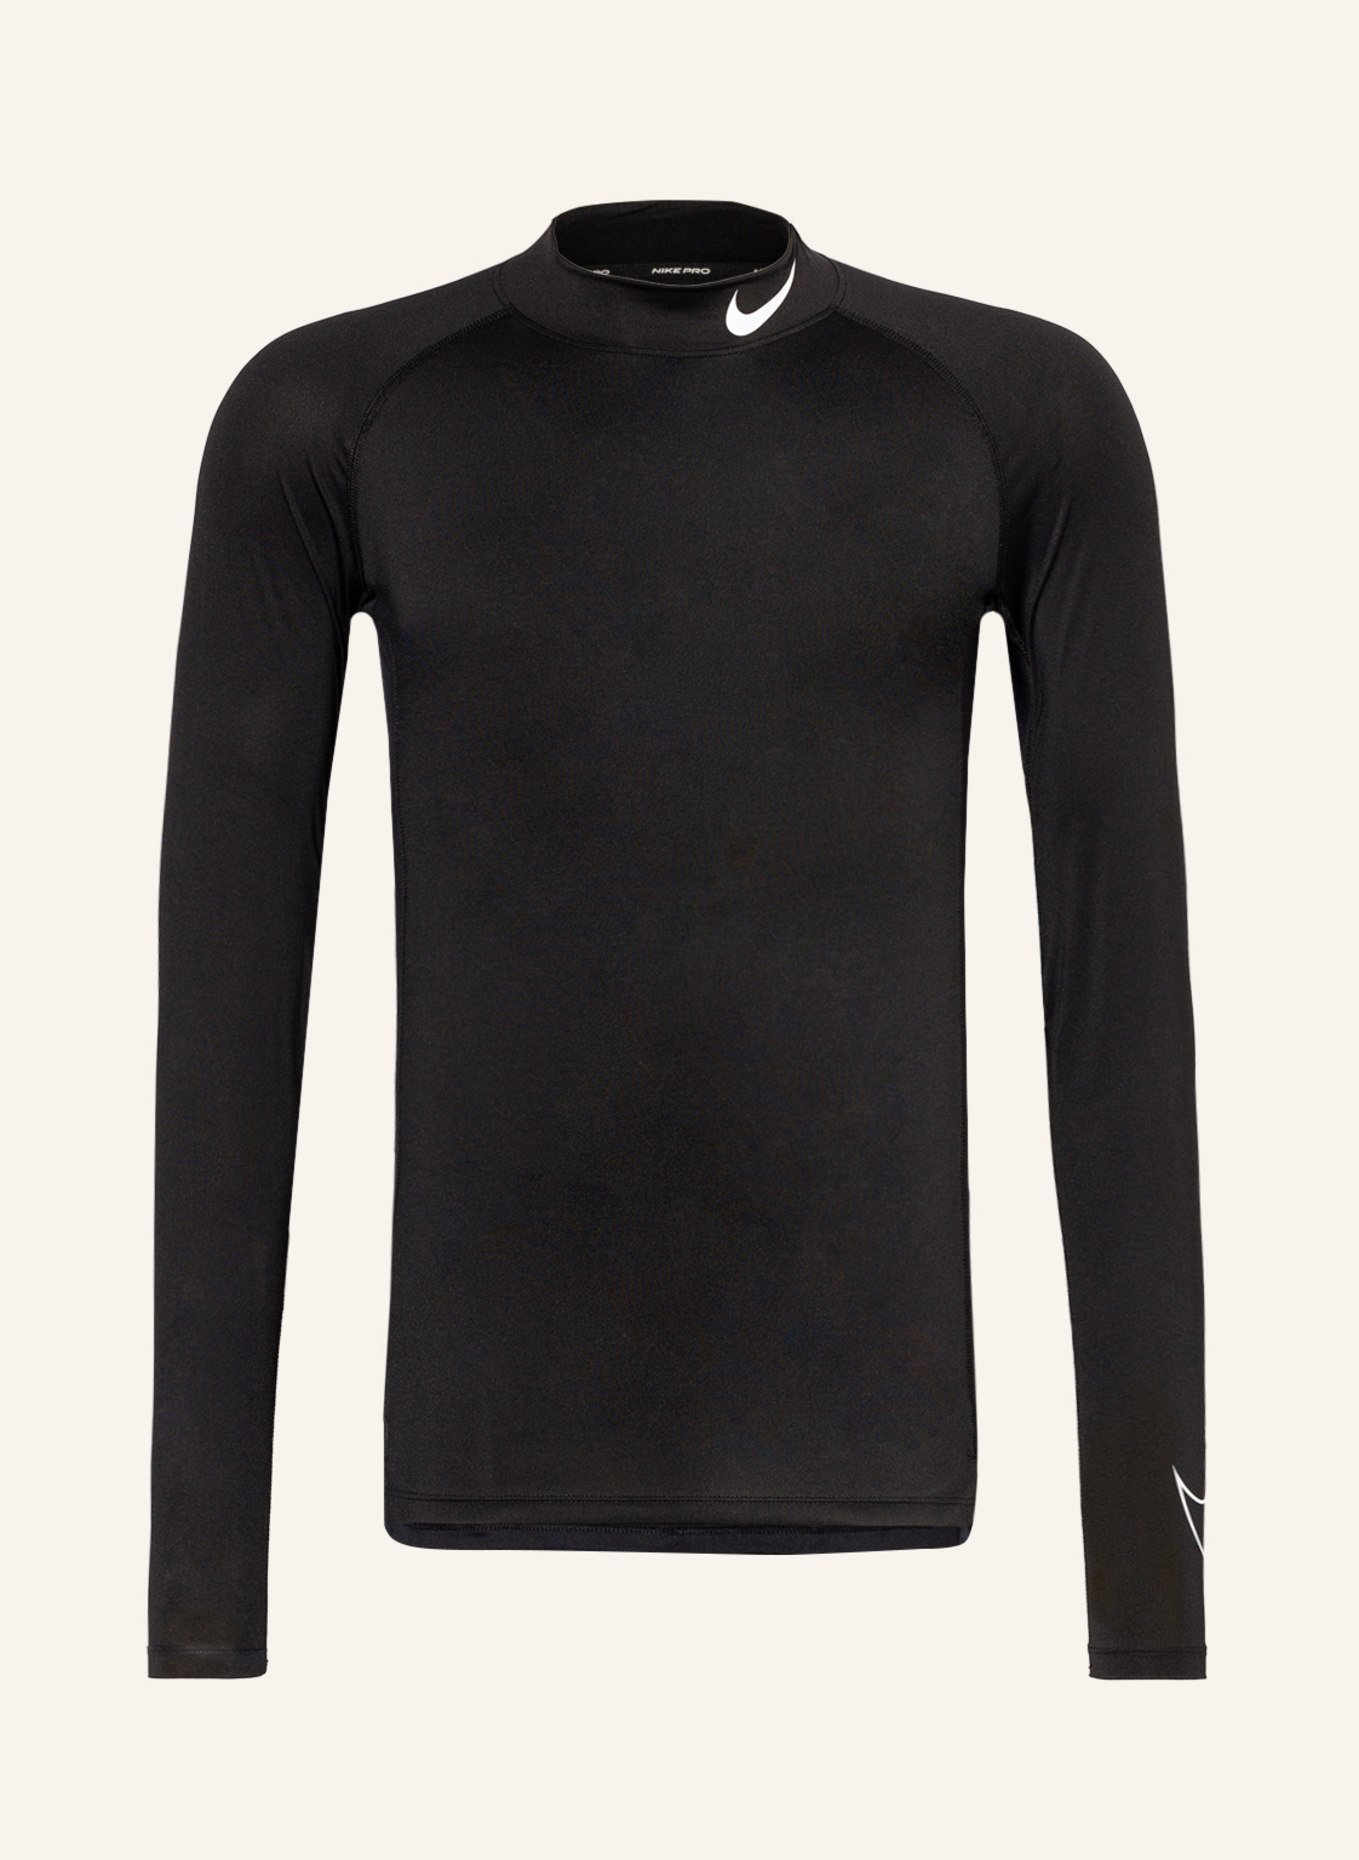 Nike Long sleeve shirt PRO DRI-FIT, Color: BLACK (Image 1)